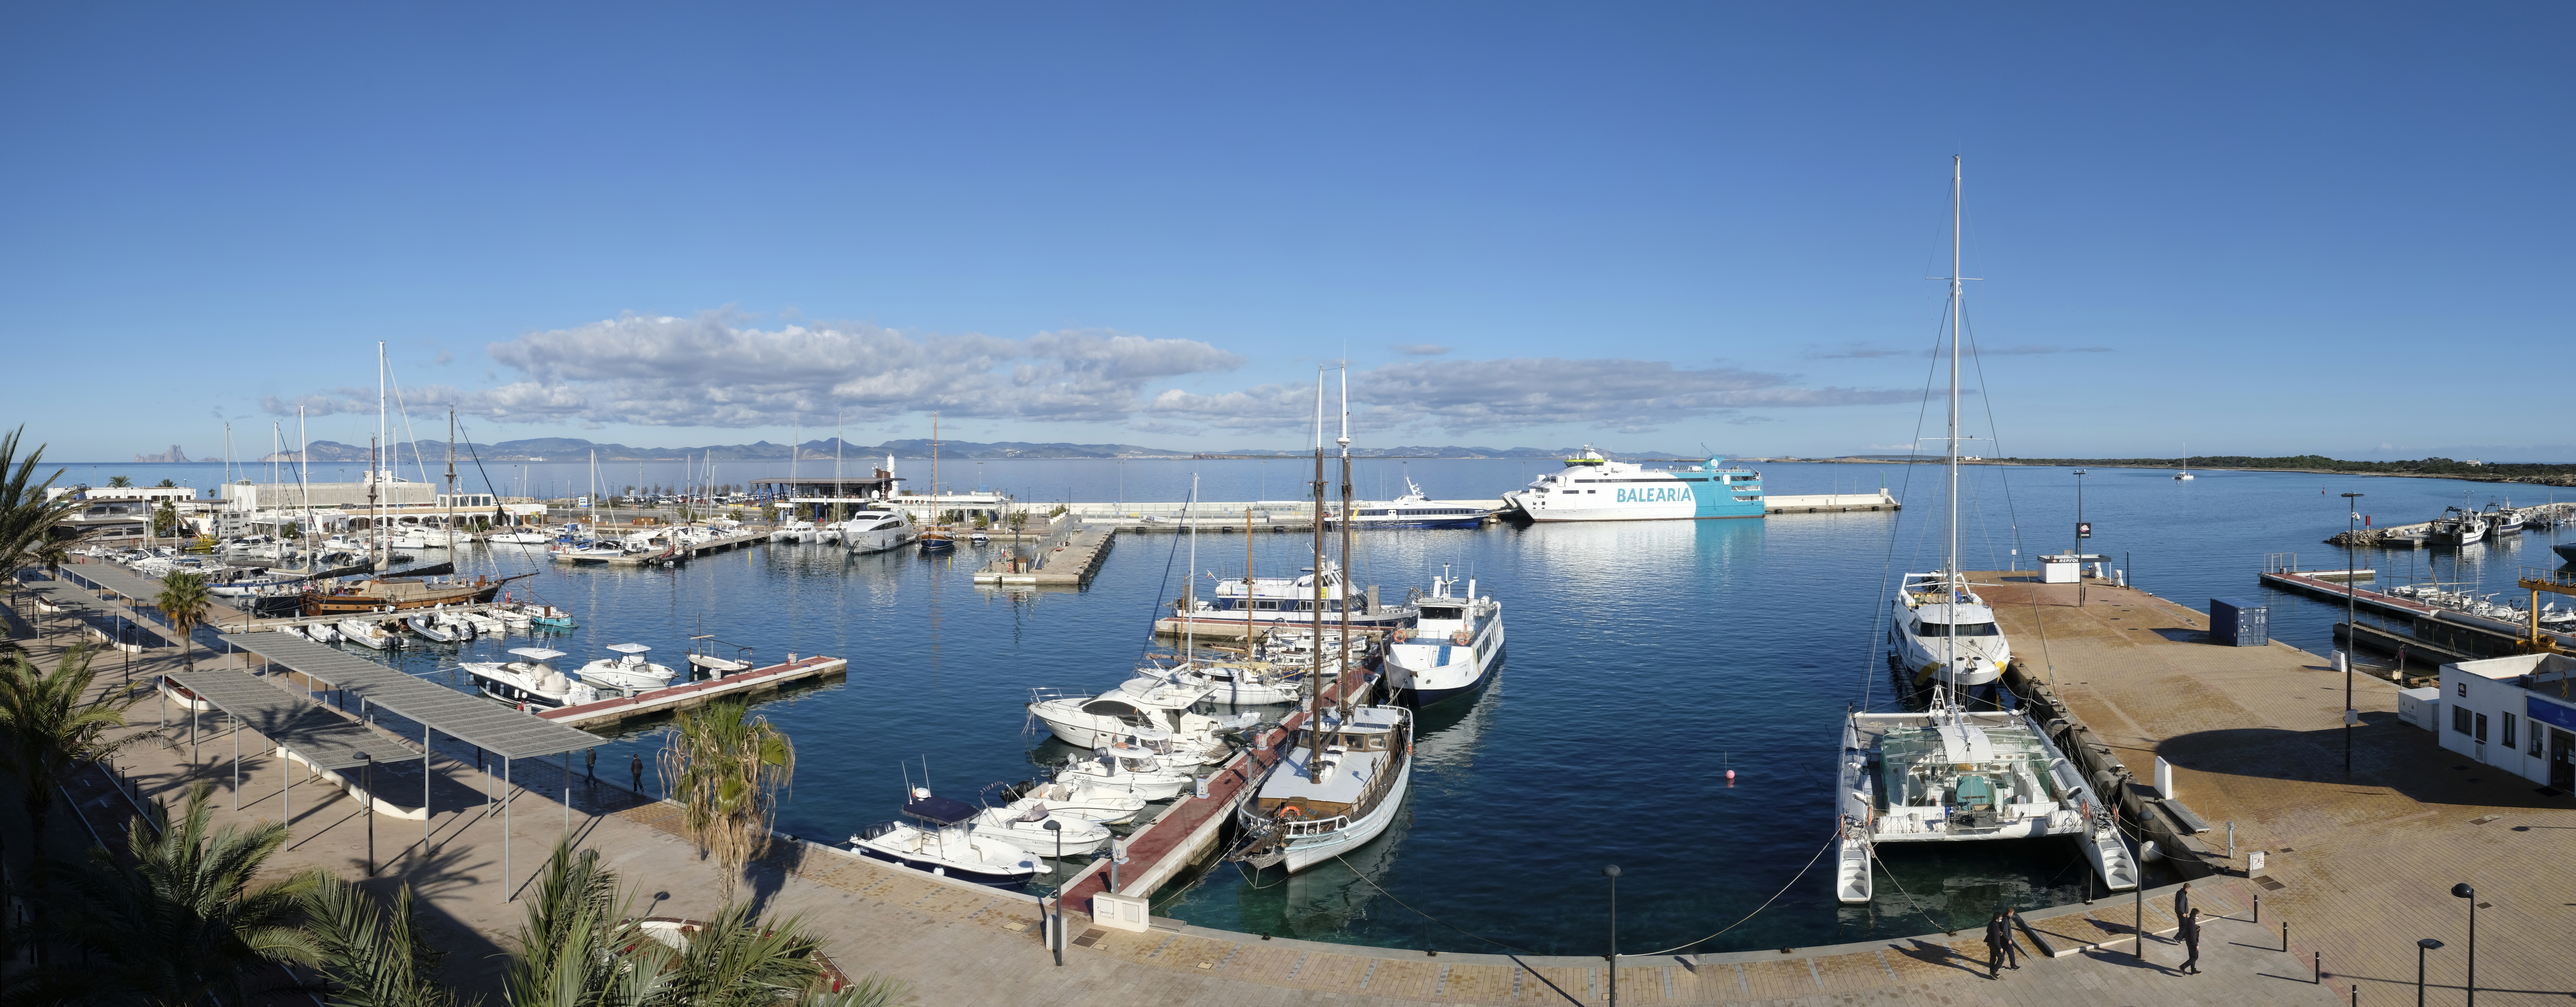 Sale a concurso la gestión de una instalación de marina seca para embarcaciones chárter de pequeña eslora en el puerto de la Savina